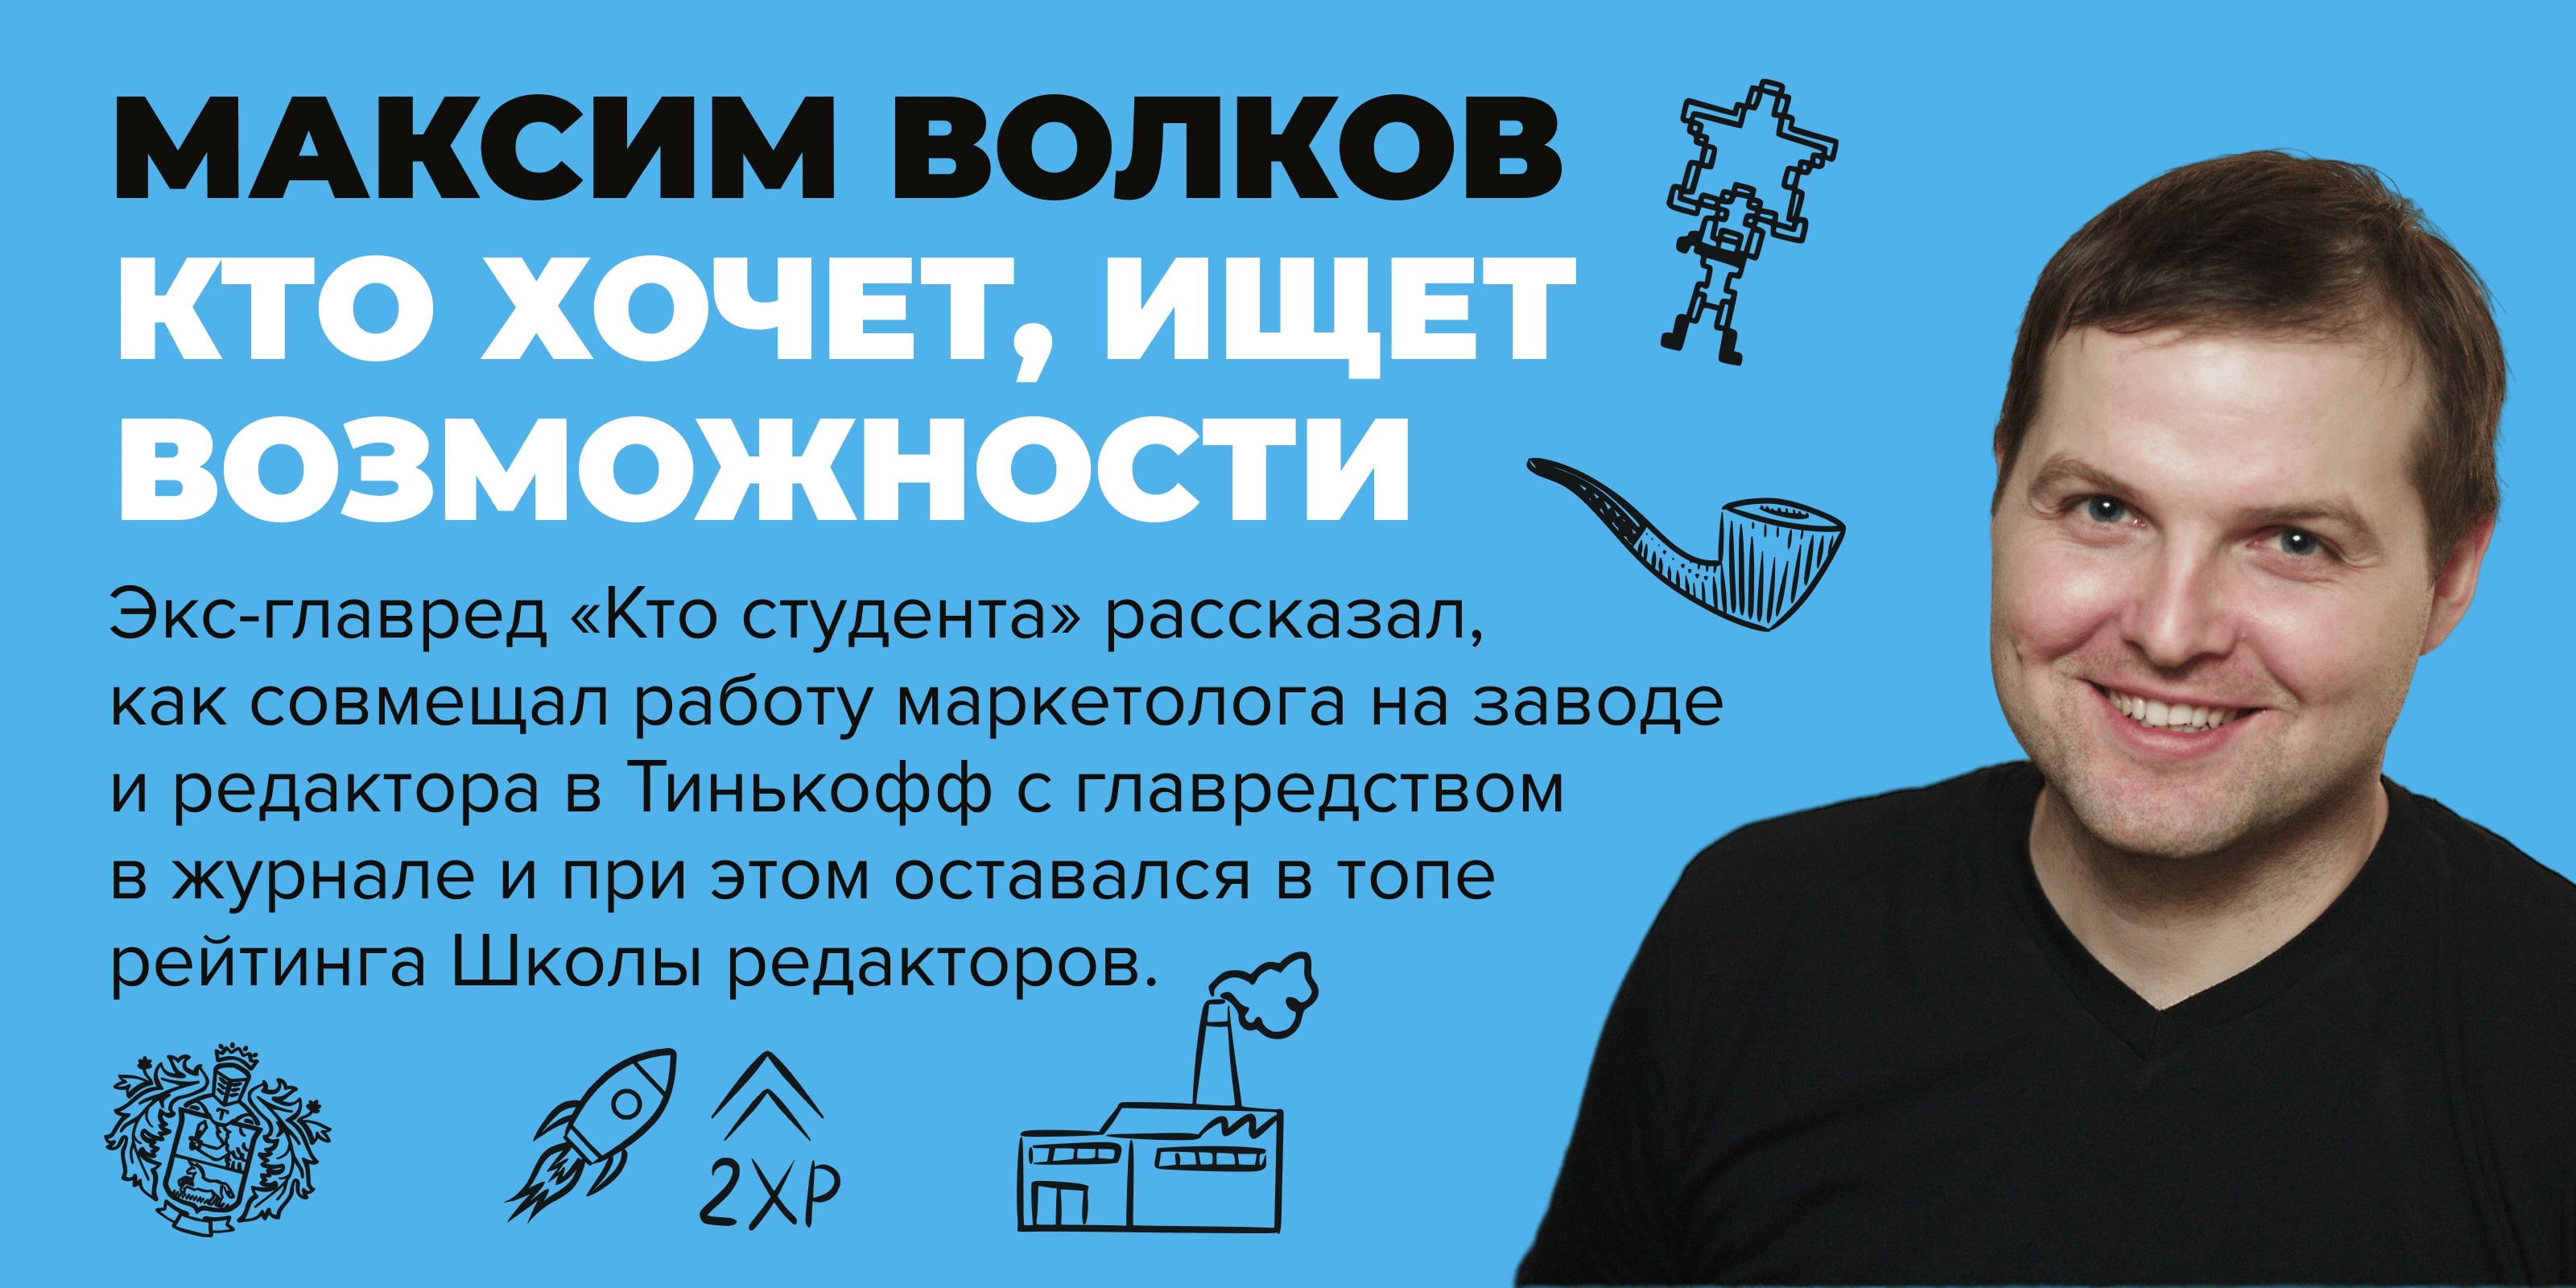 Обложка интервью Максима Волкова в журнале Кто студент